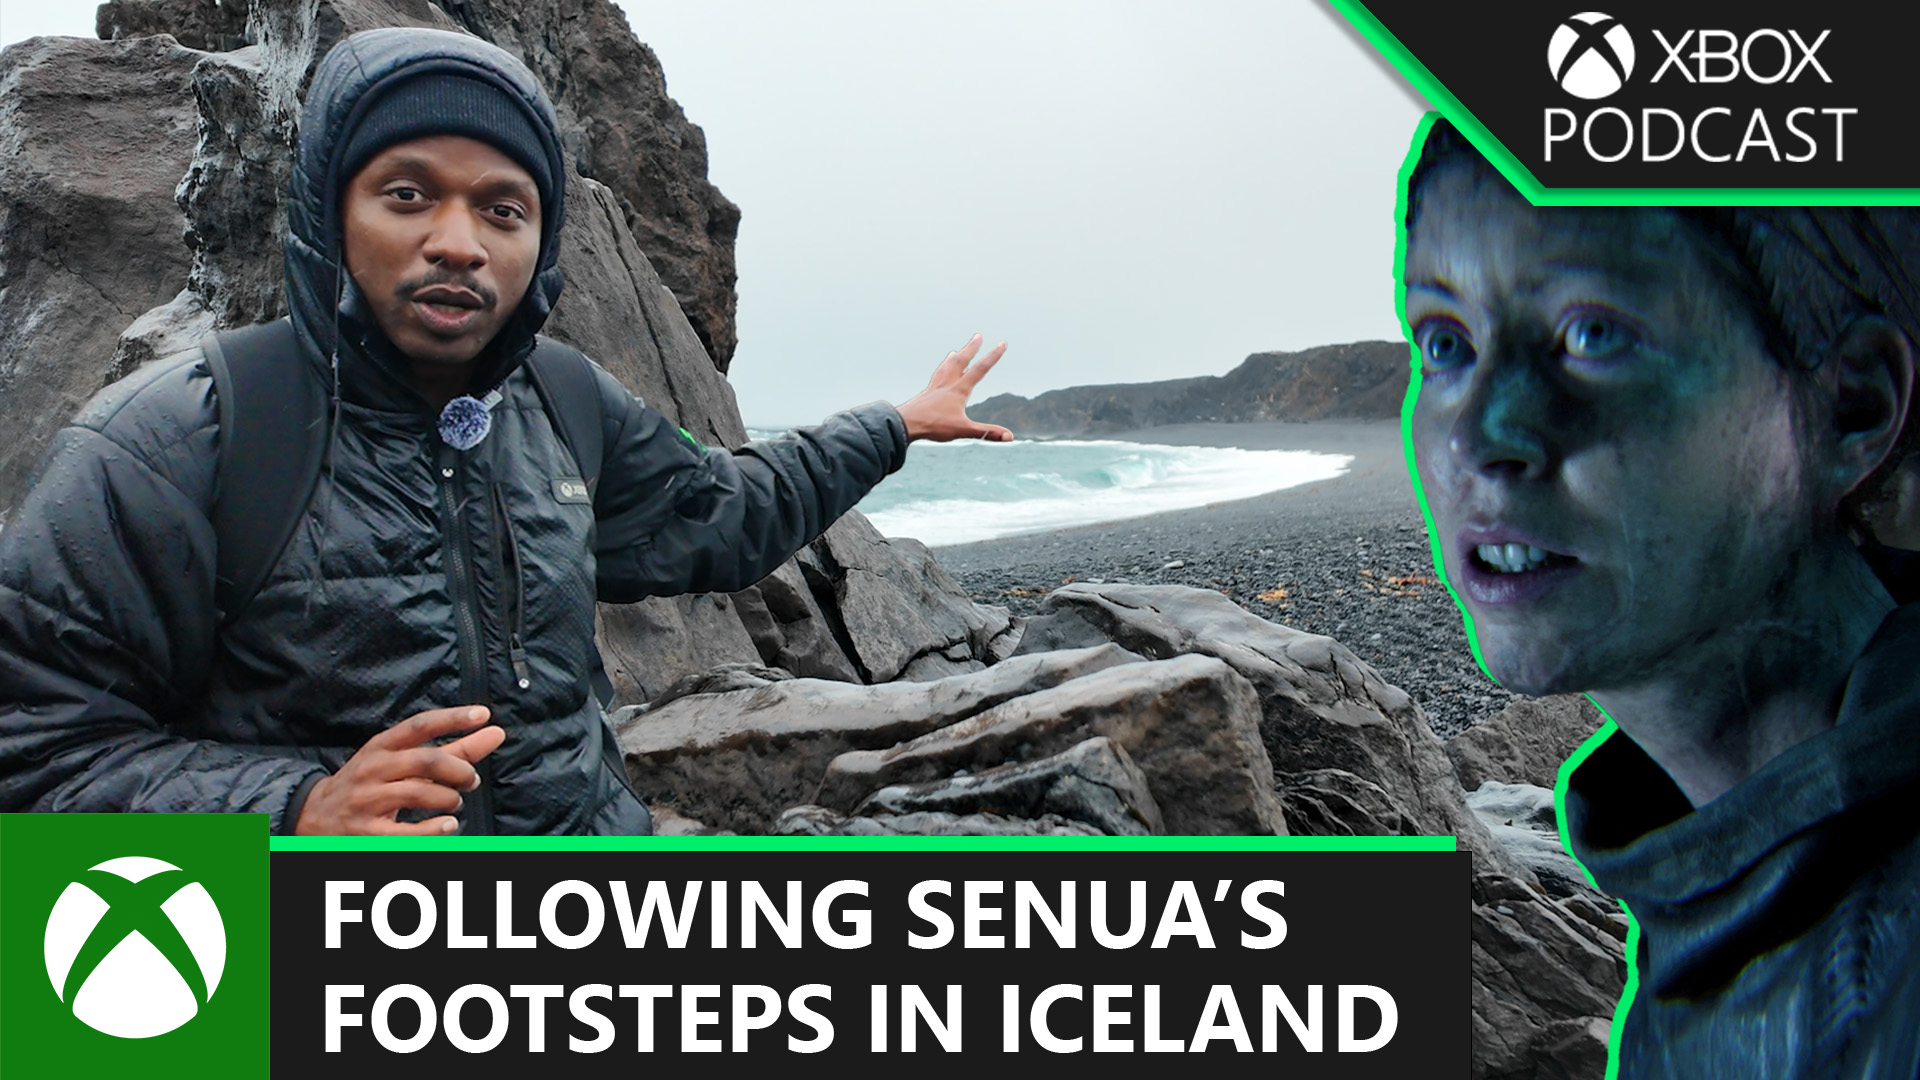 Senua’s Saga: Hellblade II – On Location at The Vast Iceland Setting